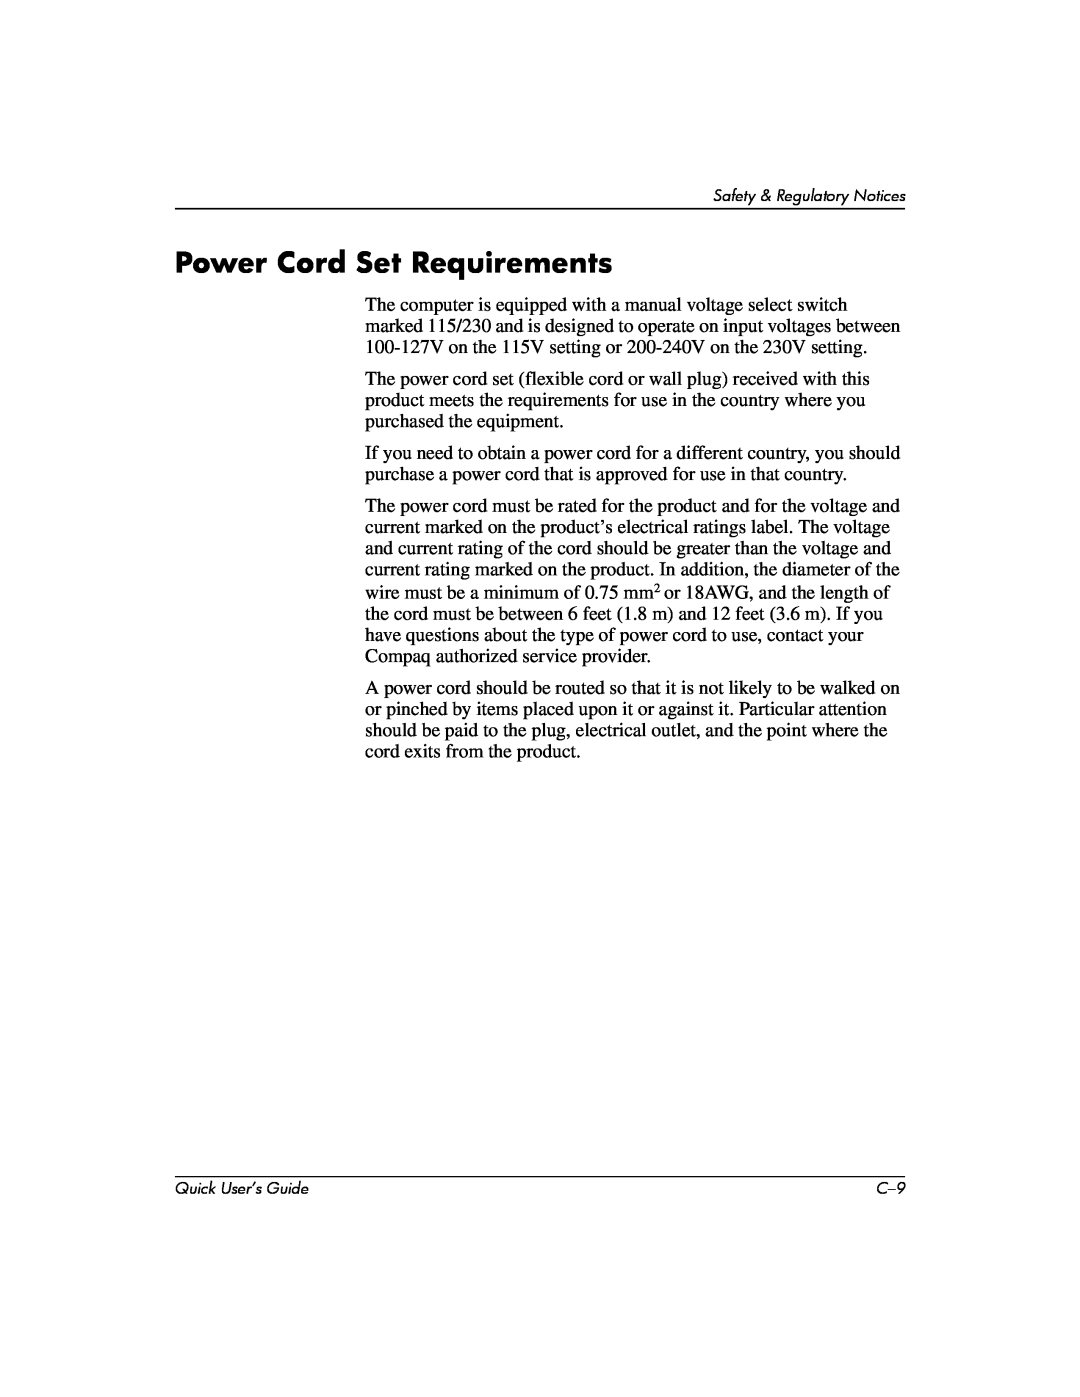 Compaq D510 e-pc manual Power Cord Set Requirements 